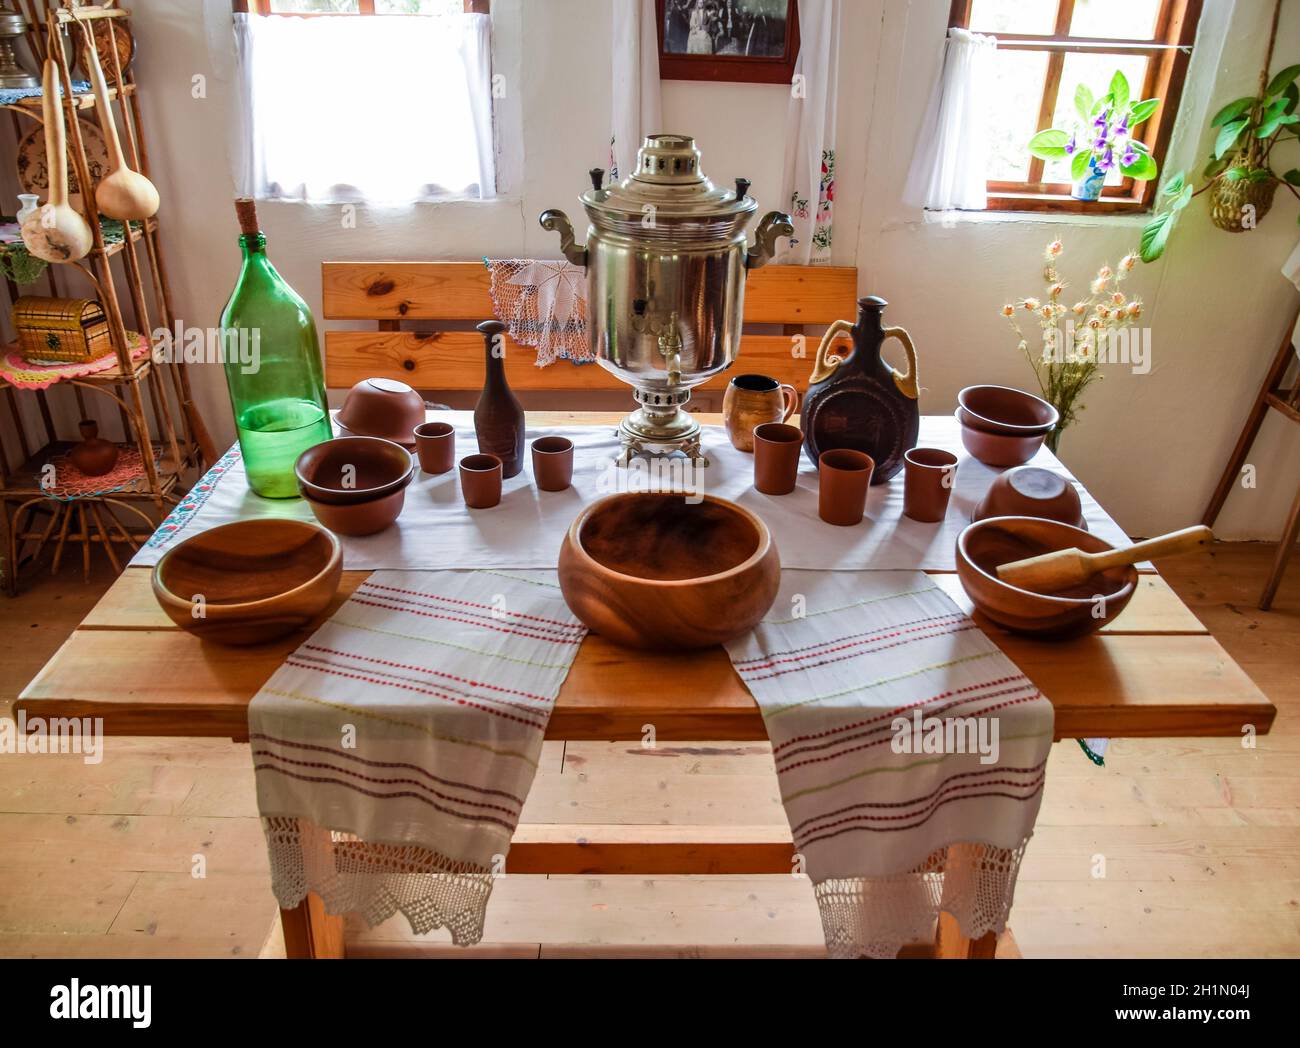 Un prix pour l'alimentation dans un logement cosaque. La poterie, le samovar et brew Banque D'Images